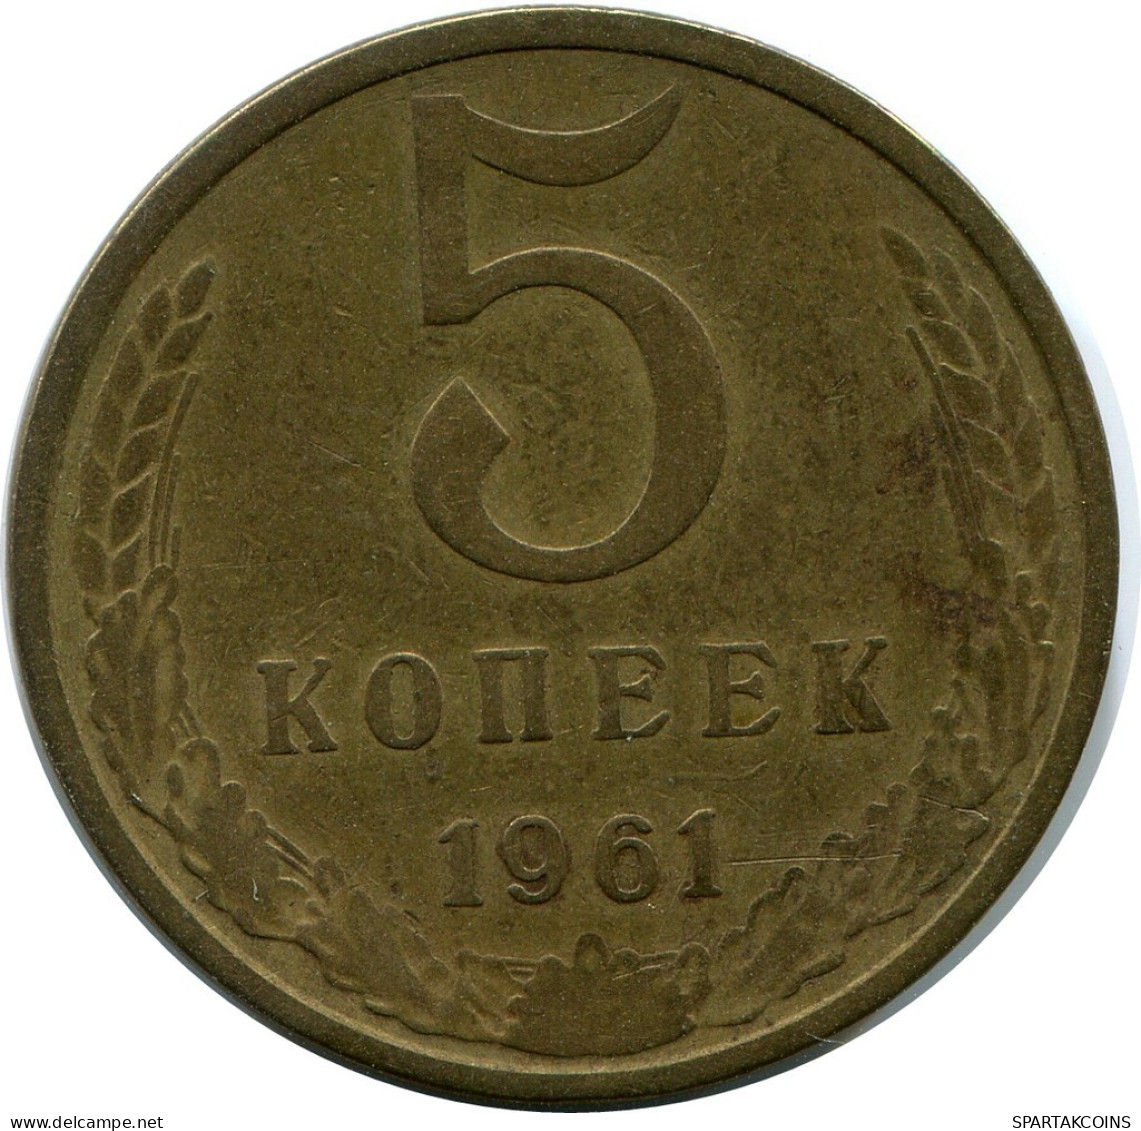 5 KOPEKS 1961 RUSSIE RUSSIA USSR Pièce #AR915.F.A - Russie